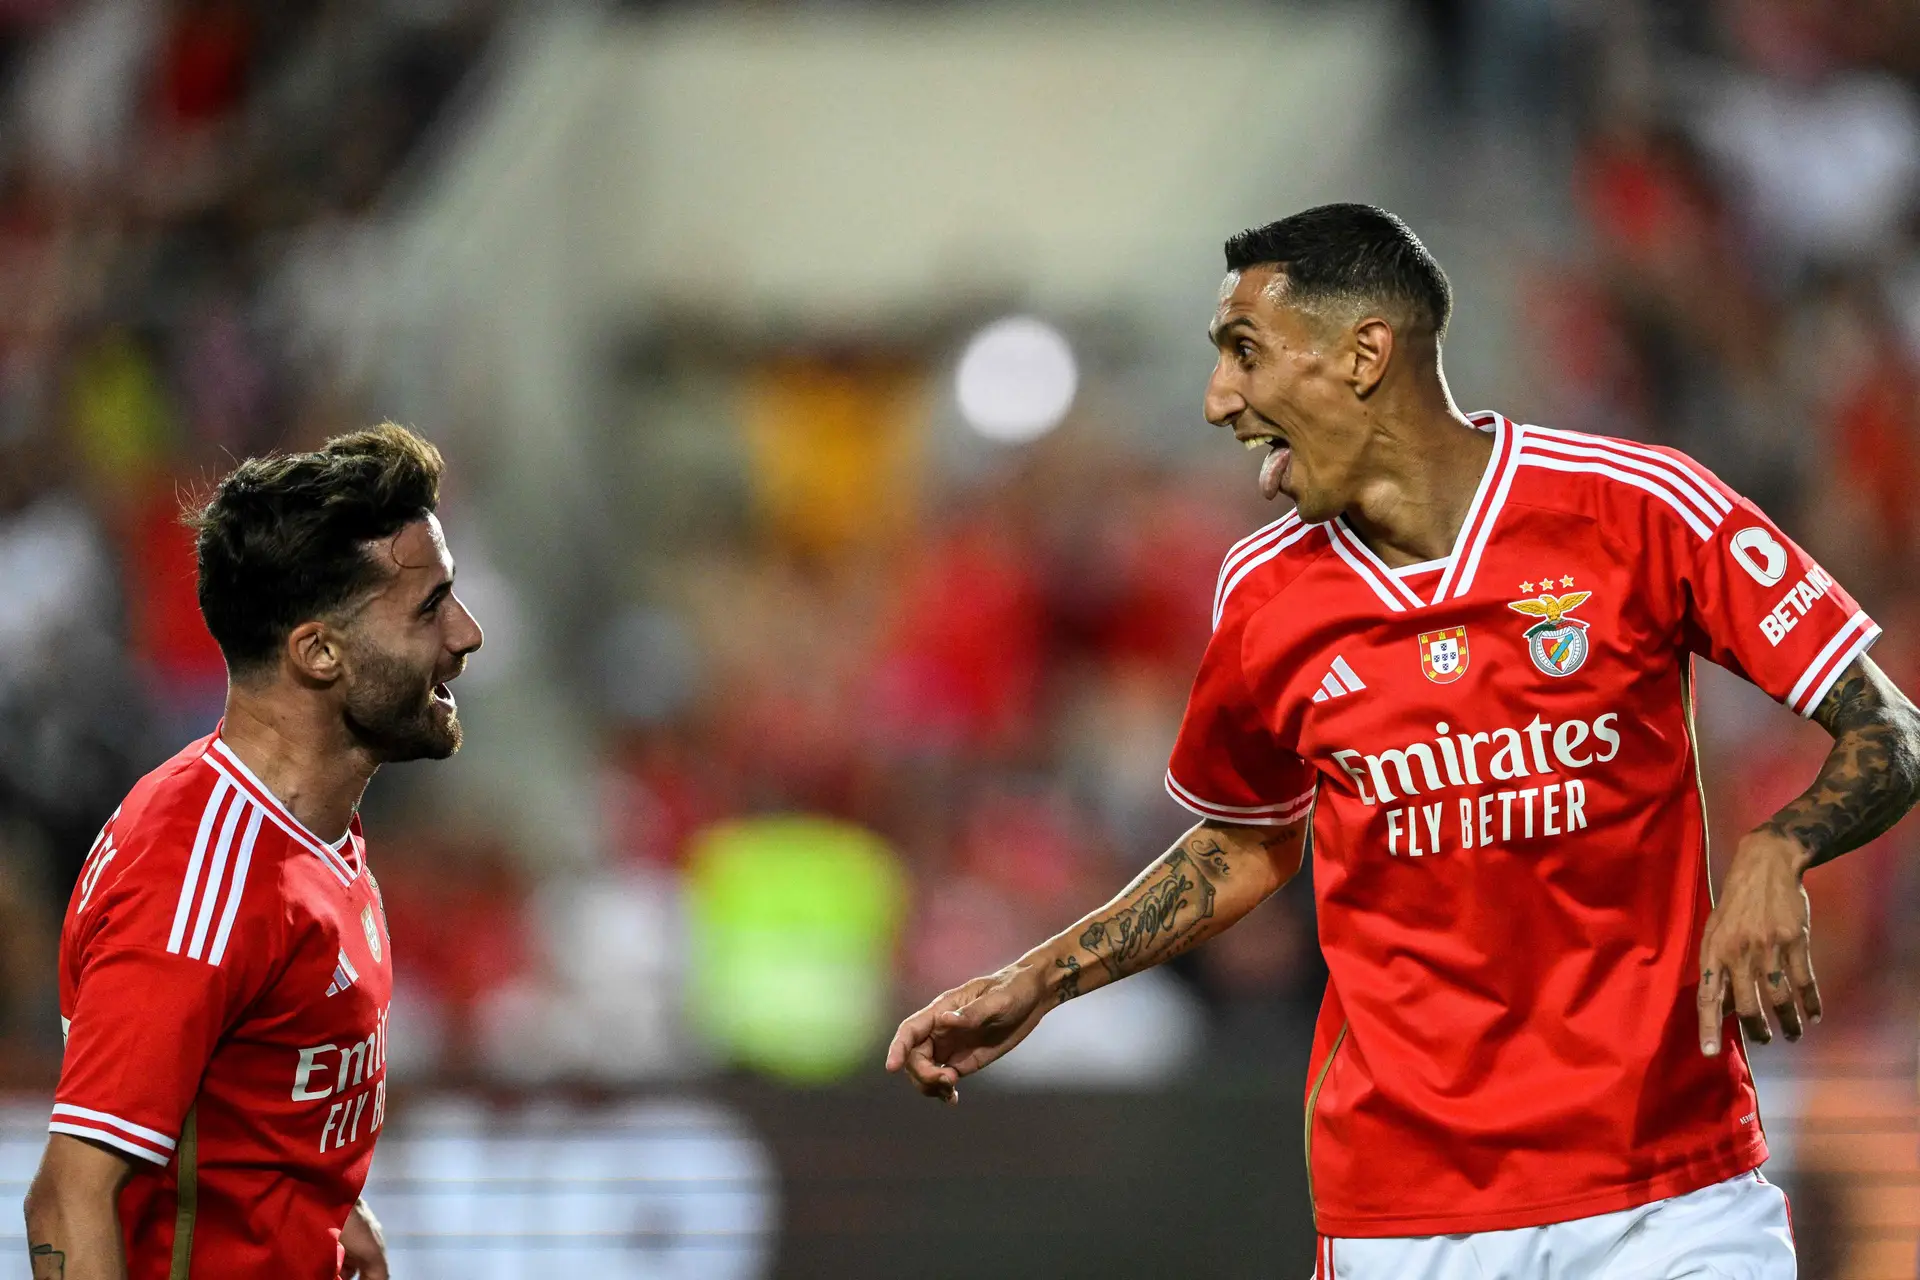 Em direto: Benfica 3-3 Inter (terminado)